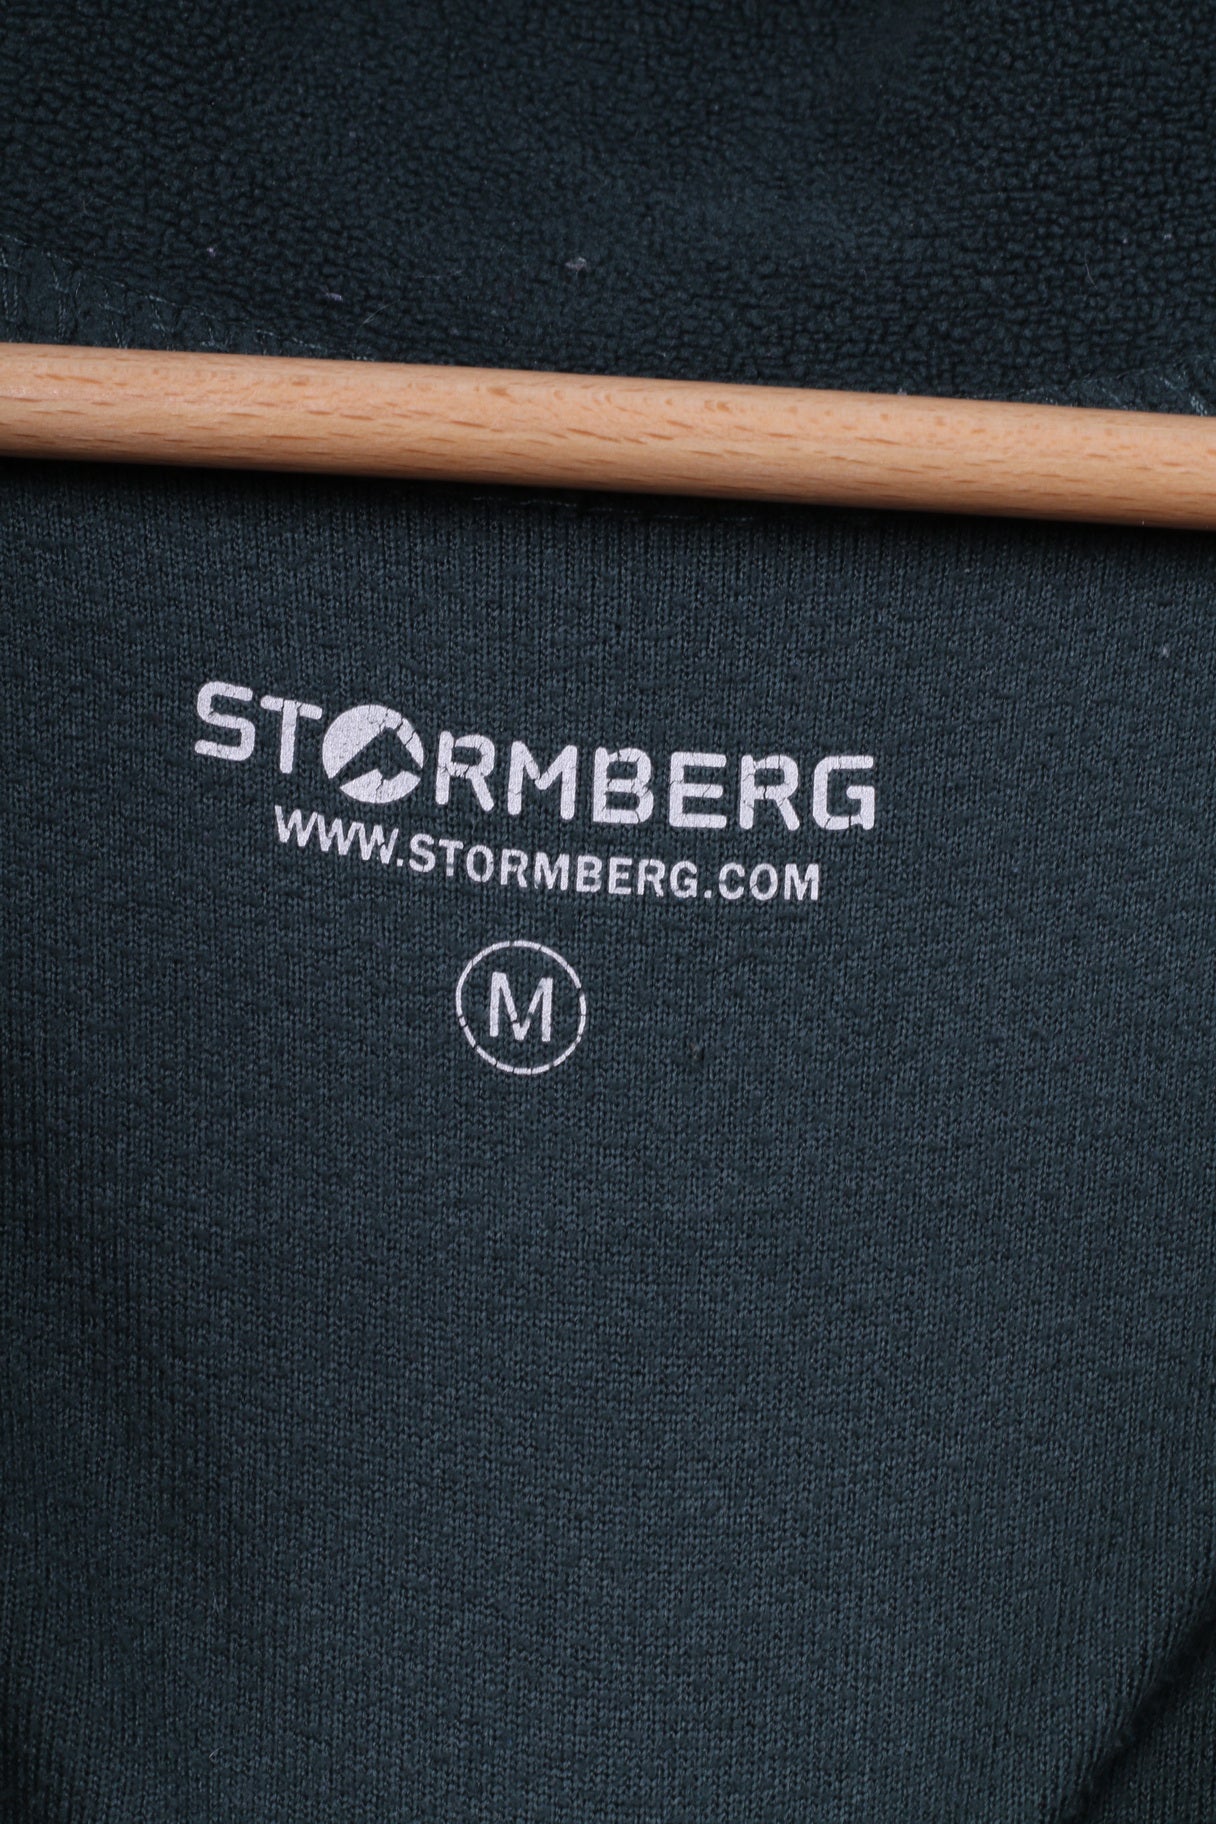 Stormberg Mens M Fleece Top Green Sportswear Top Sweatshirt Zip Neck